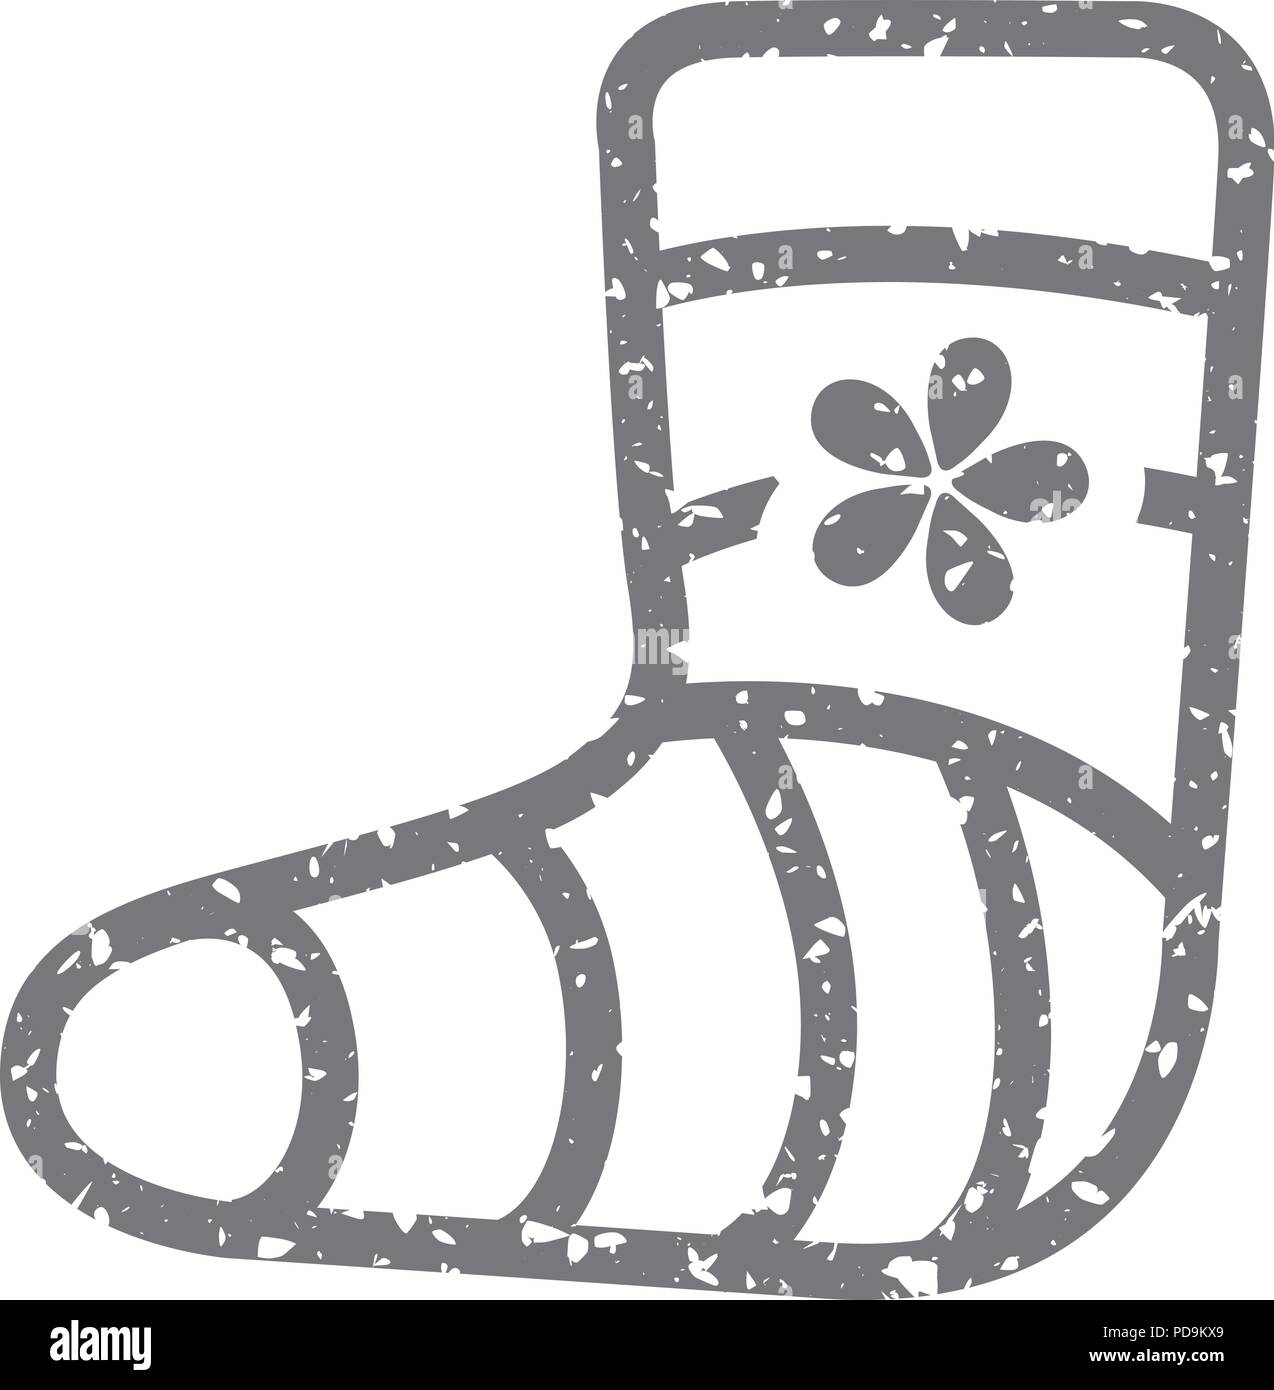 L'icône Grunge - pied blessé Illustration de Vecteur